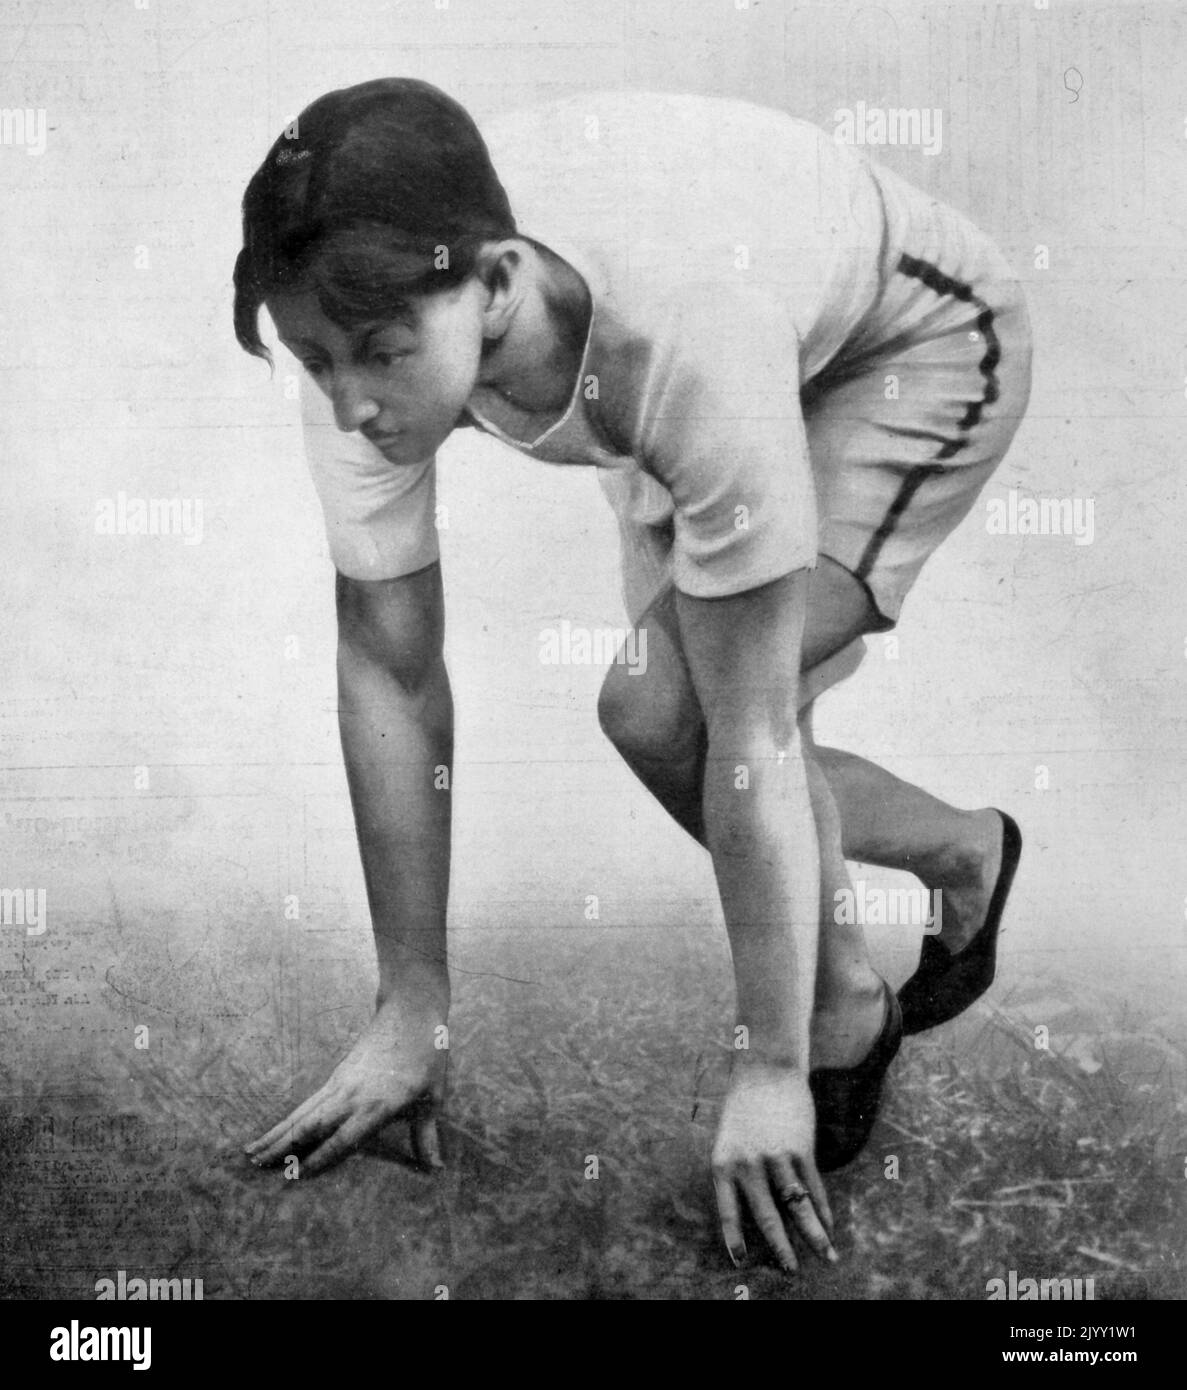 Arthur Francis Duffey (1879 - 1955), atleta estadounidense de atletismo que compitió en los Juegos Olímpicos de 1900 en París, Francia. Fue alumno de la Clase de 1899 de la Academia Worcester y la Universidad de Georgetown. Originalmente era de Boston, Massachusetts y después de su carrera atlética fue escritor y editor deportivo y se estableció en el área de Boston. Duffey compitió en el evento de los 100 metros en los Juegos Olímpicos de Verano de 1900, ubicando cuarto en general. Ganó su primera ronda de calor con un tiempo de 11,4 segundos, cayó a 11,0 segundos para ganar su semifinal, y tomó una ventaja en la final antes de pullin Foto de stock